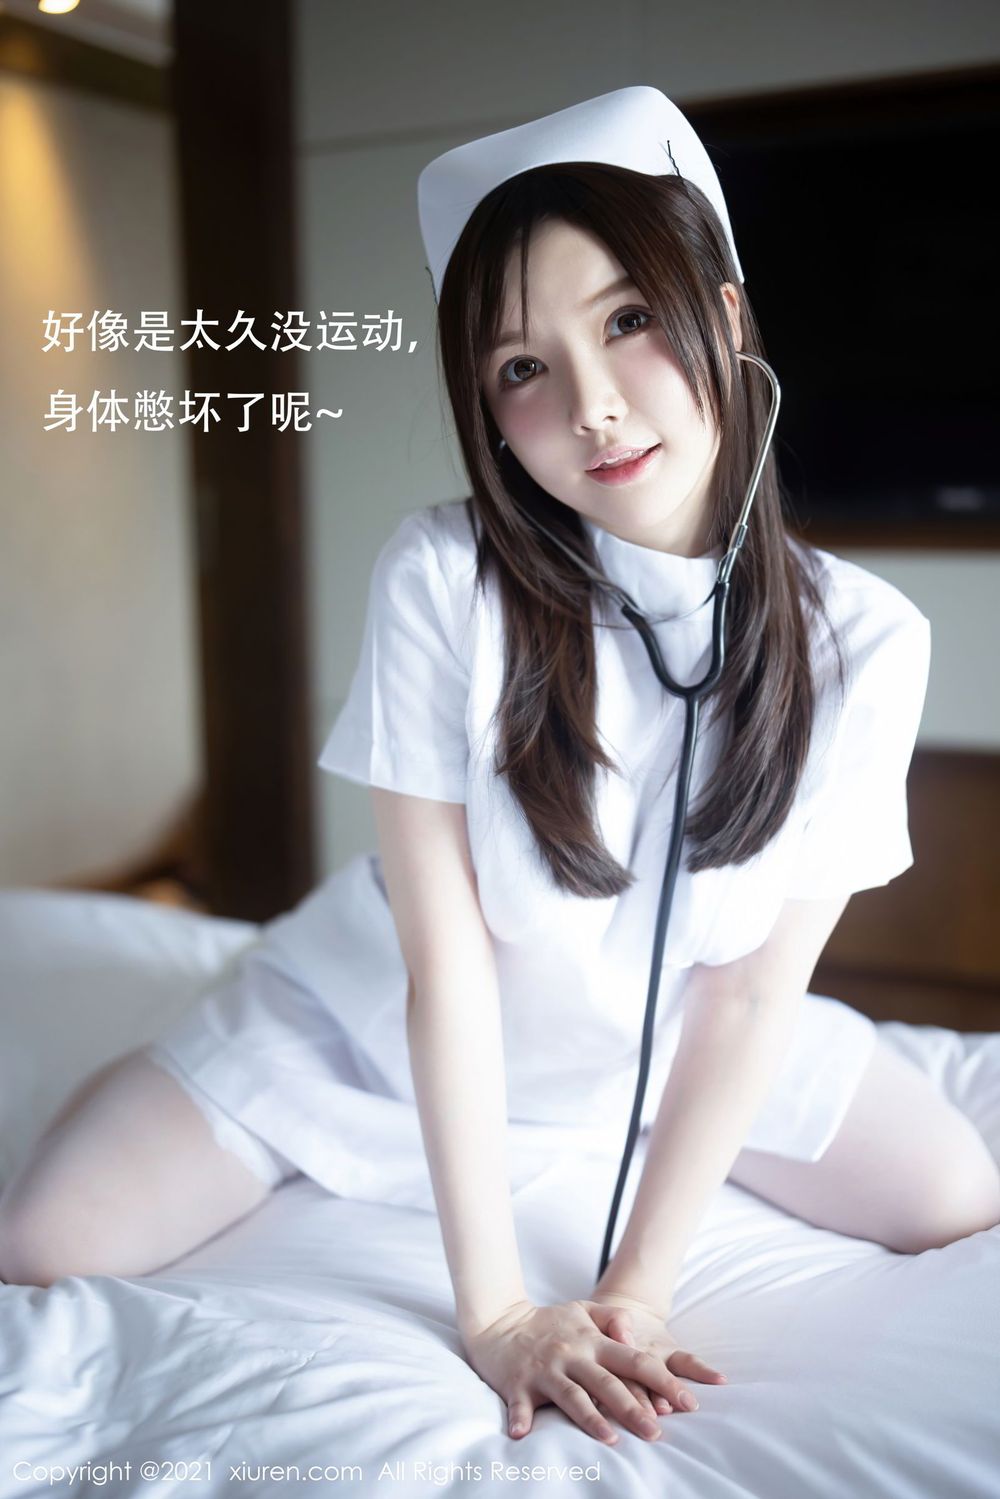 美女模特糯美子Mini洁白护士制服系列姿态诱人写真